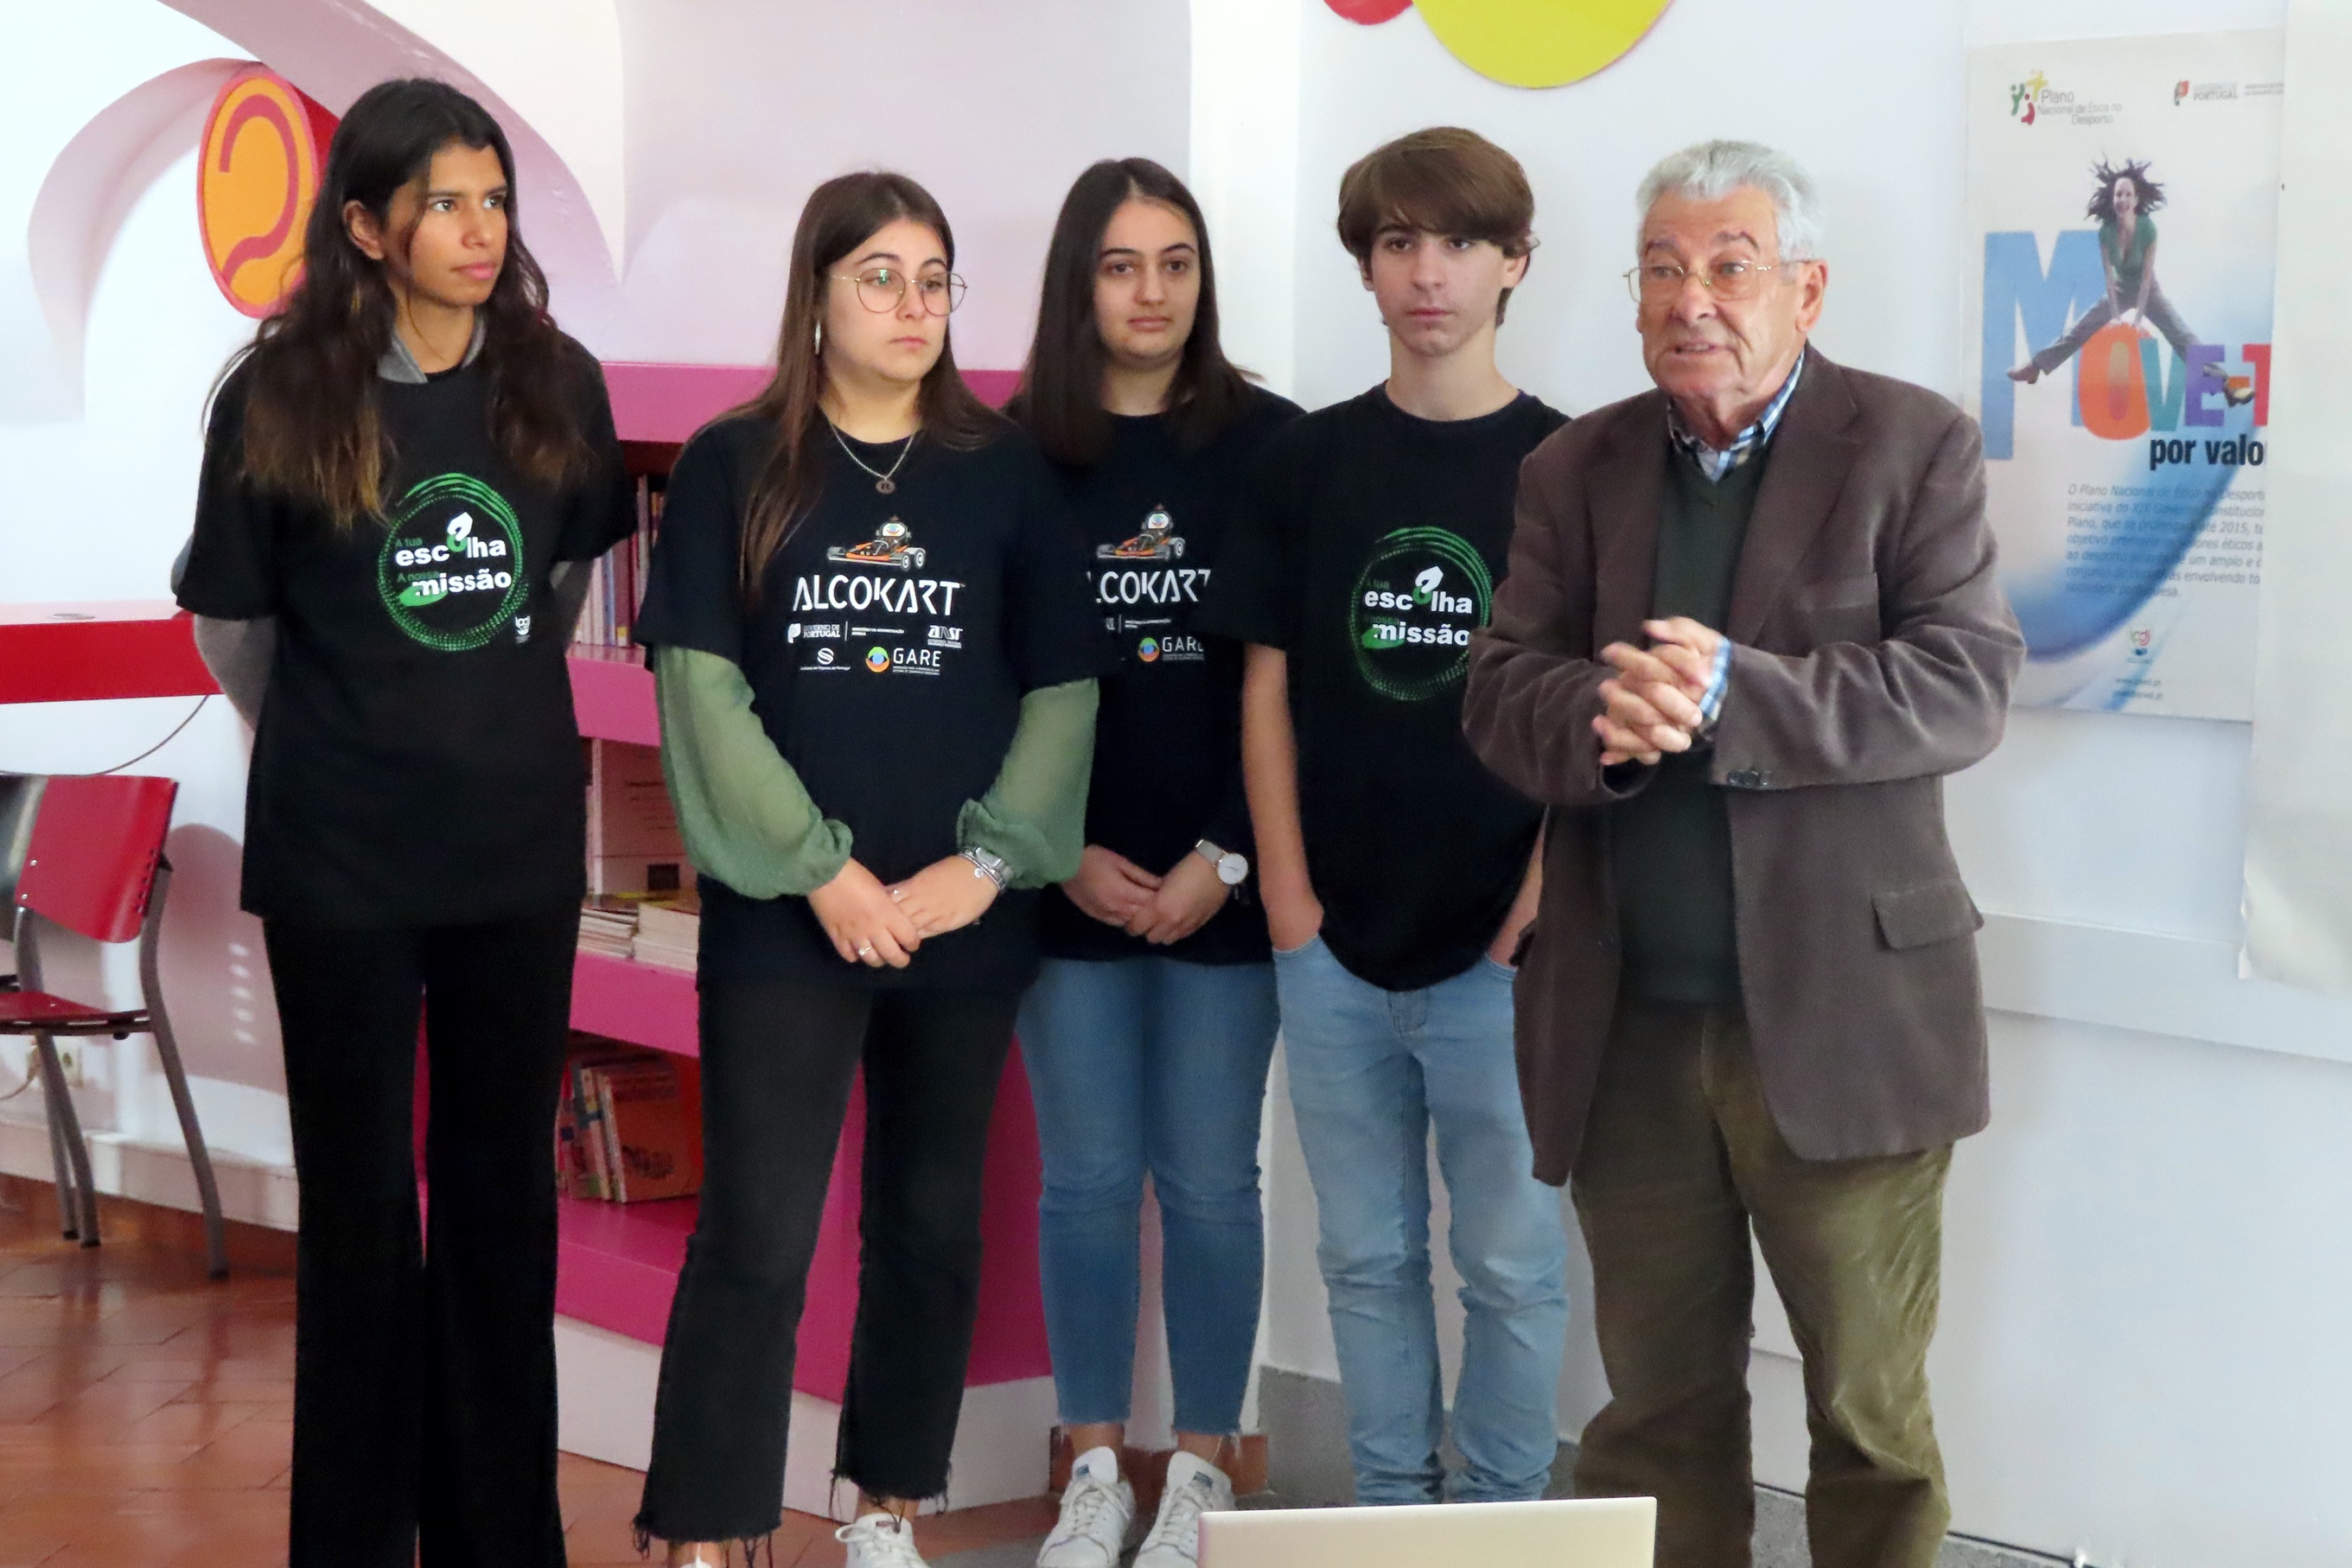 Presidente da Assembleia Geral da associação GARE, António Adérito Araújo, e os quatro voluntários interveninentes na dinamização do projeto de voluntariado, a apresentar o mesmo.